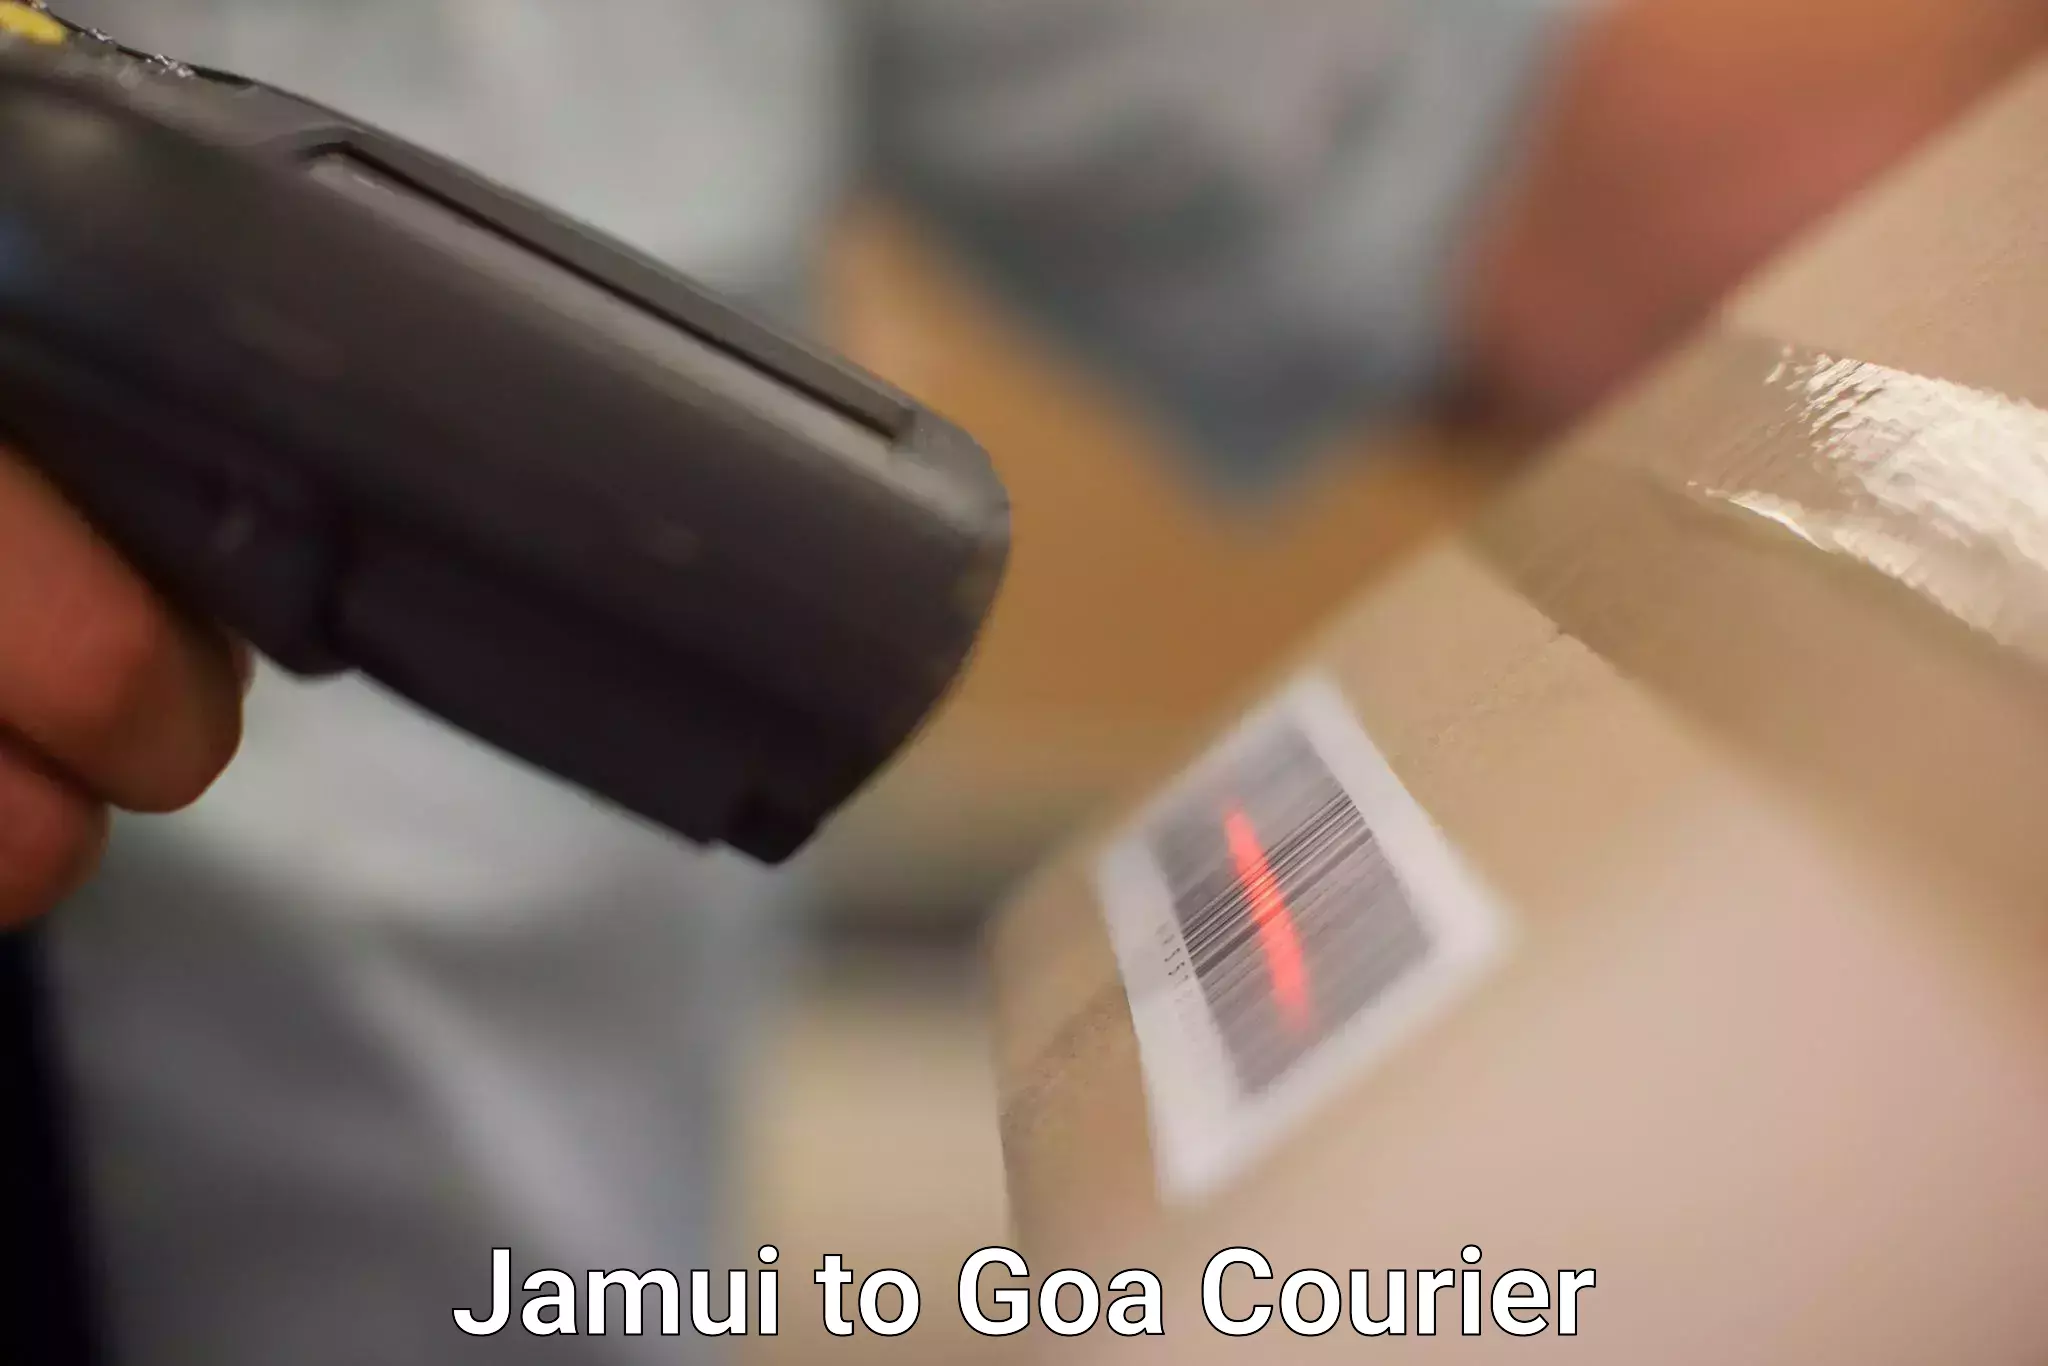 Express postal services Jamui to Goa